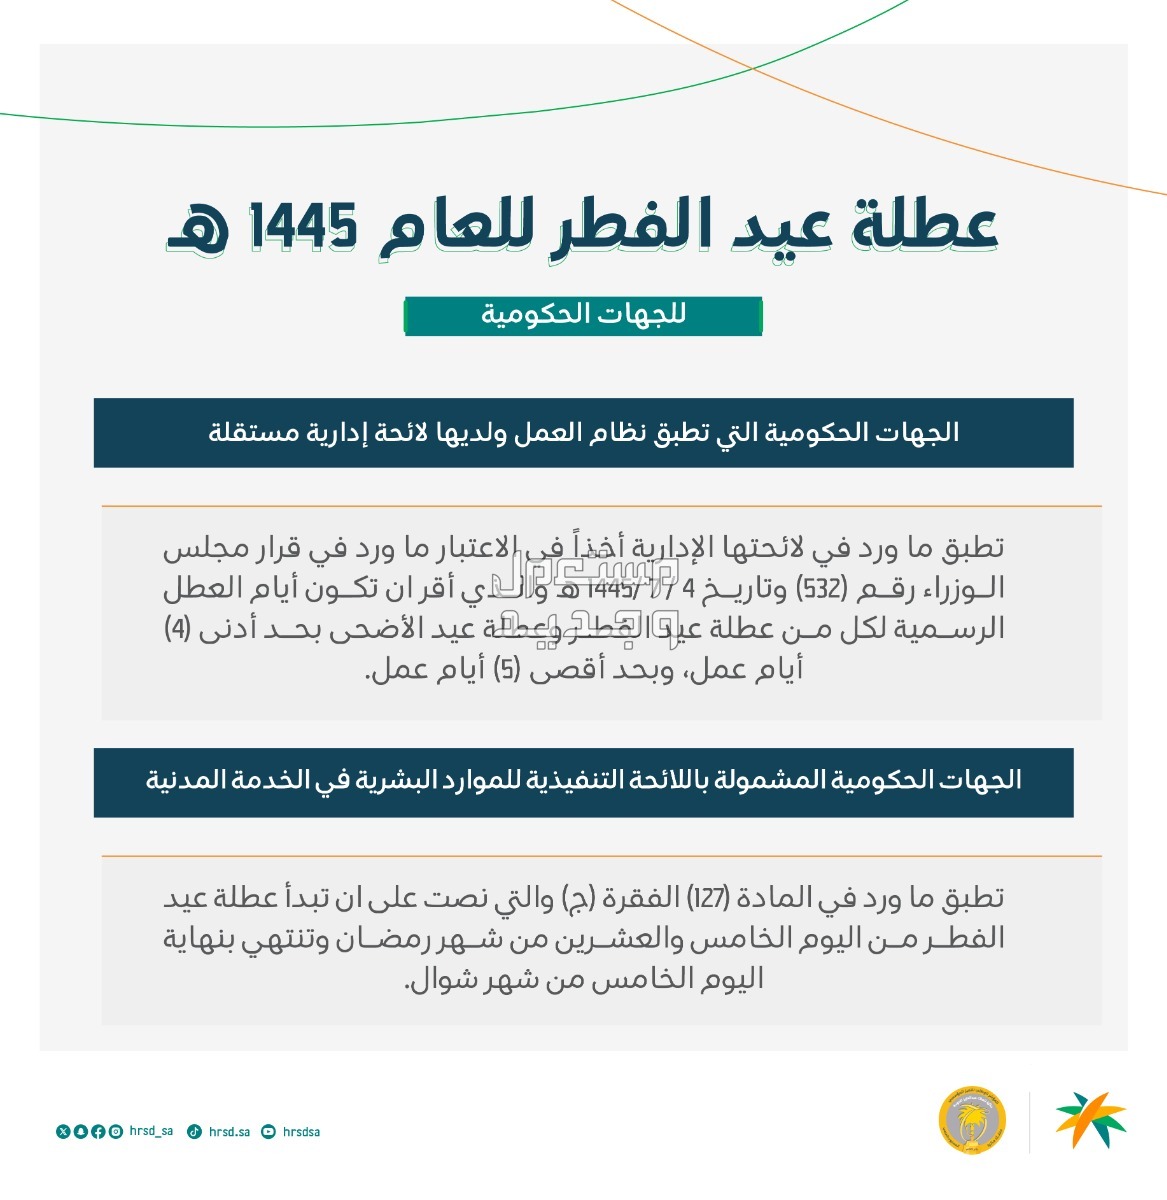 عدد أيام عطلة عيد الفطر 1445 للموظفين وطلاب المدارس في الكويت عطلة عيد الفطر 1445